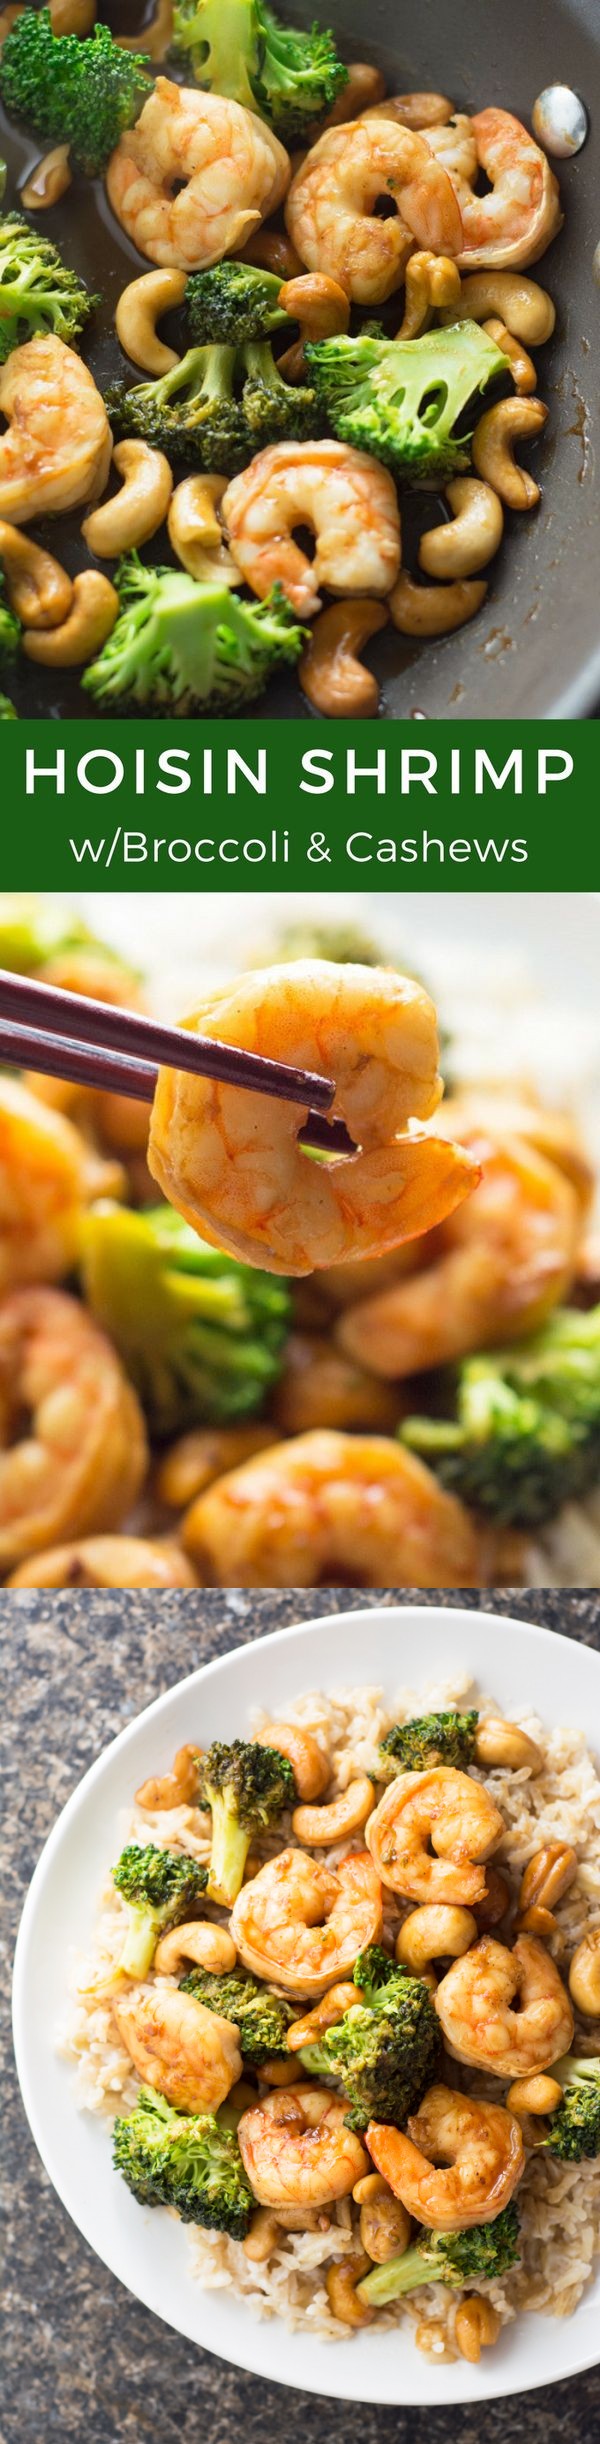 Hoisin Shrimp with Broccoli and Cashews